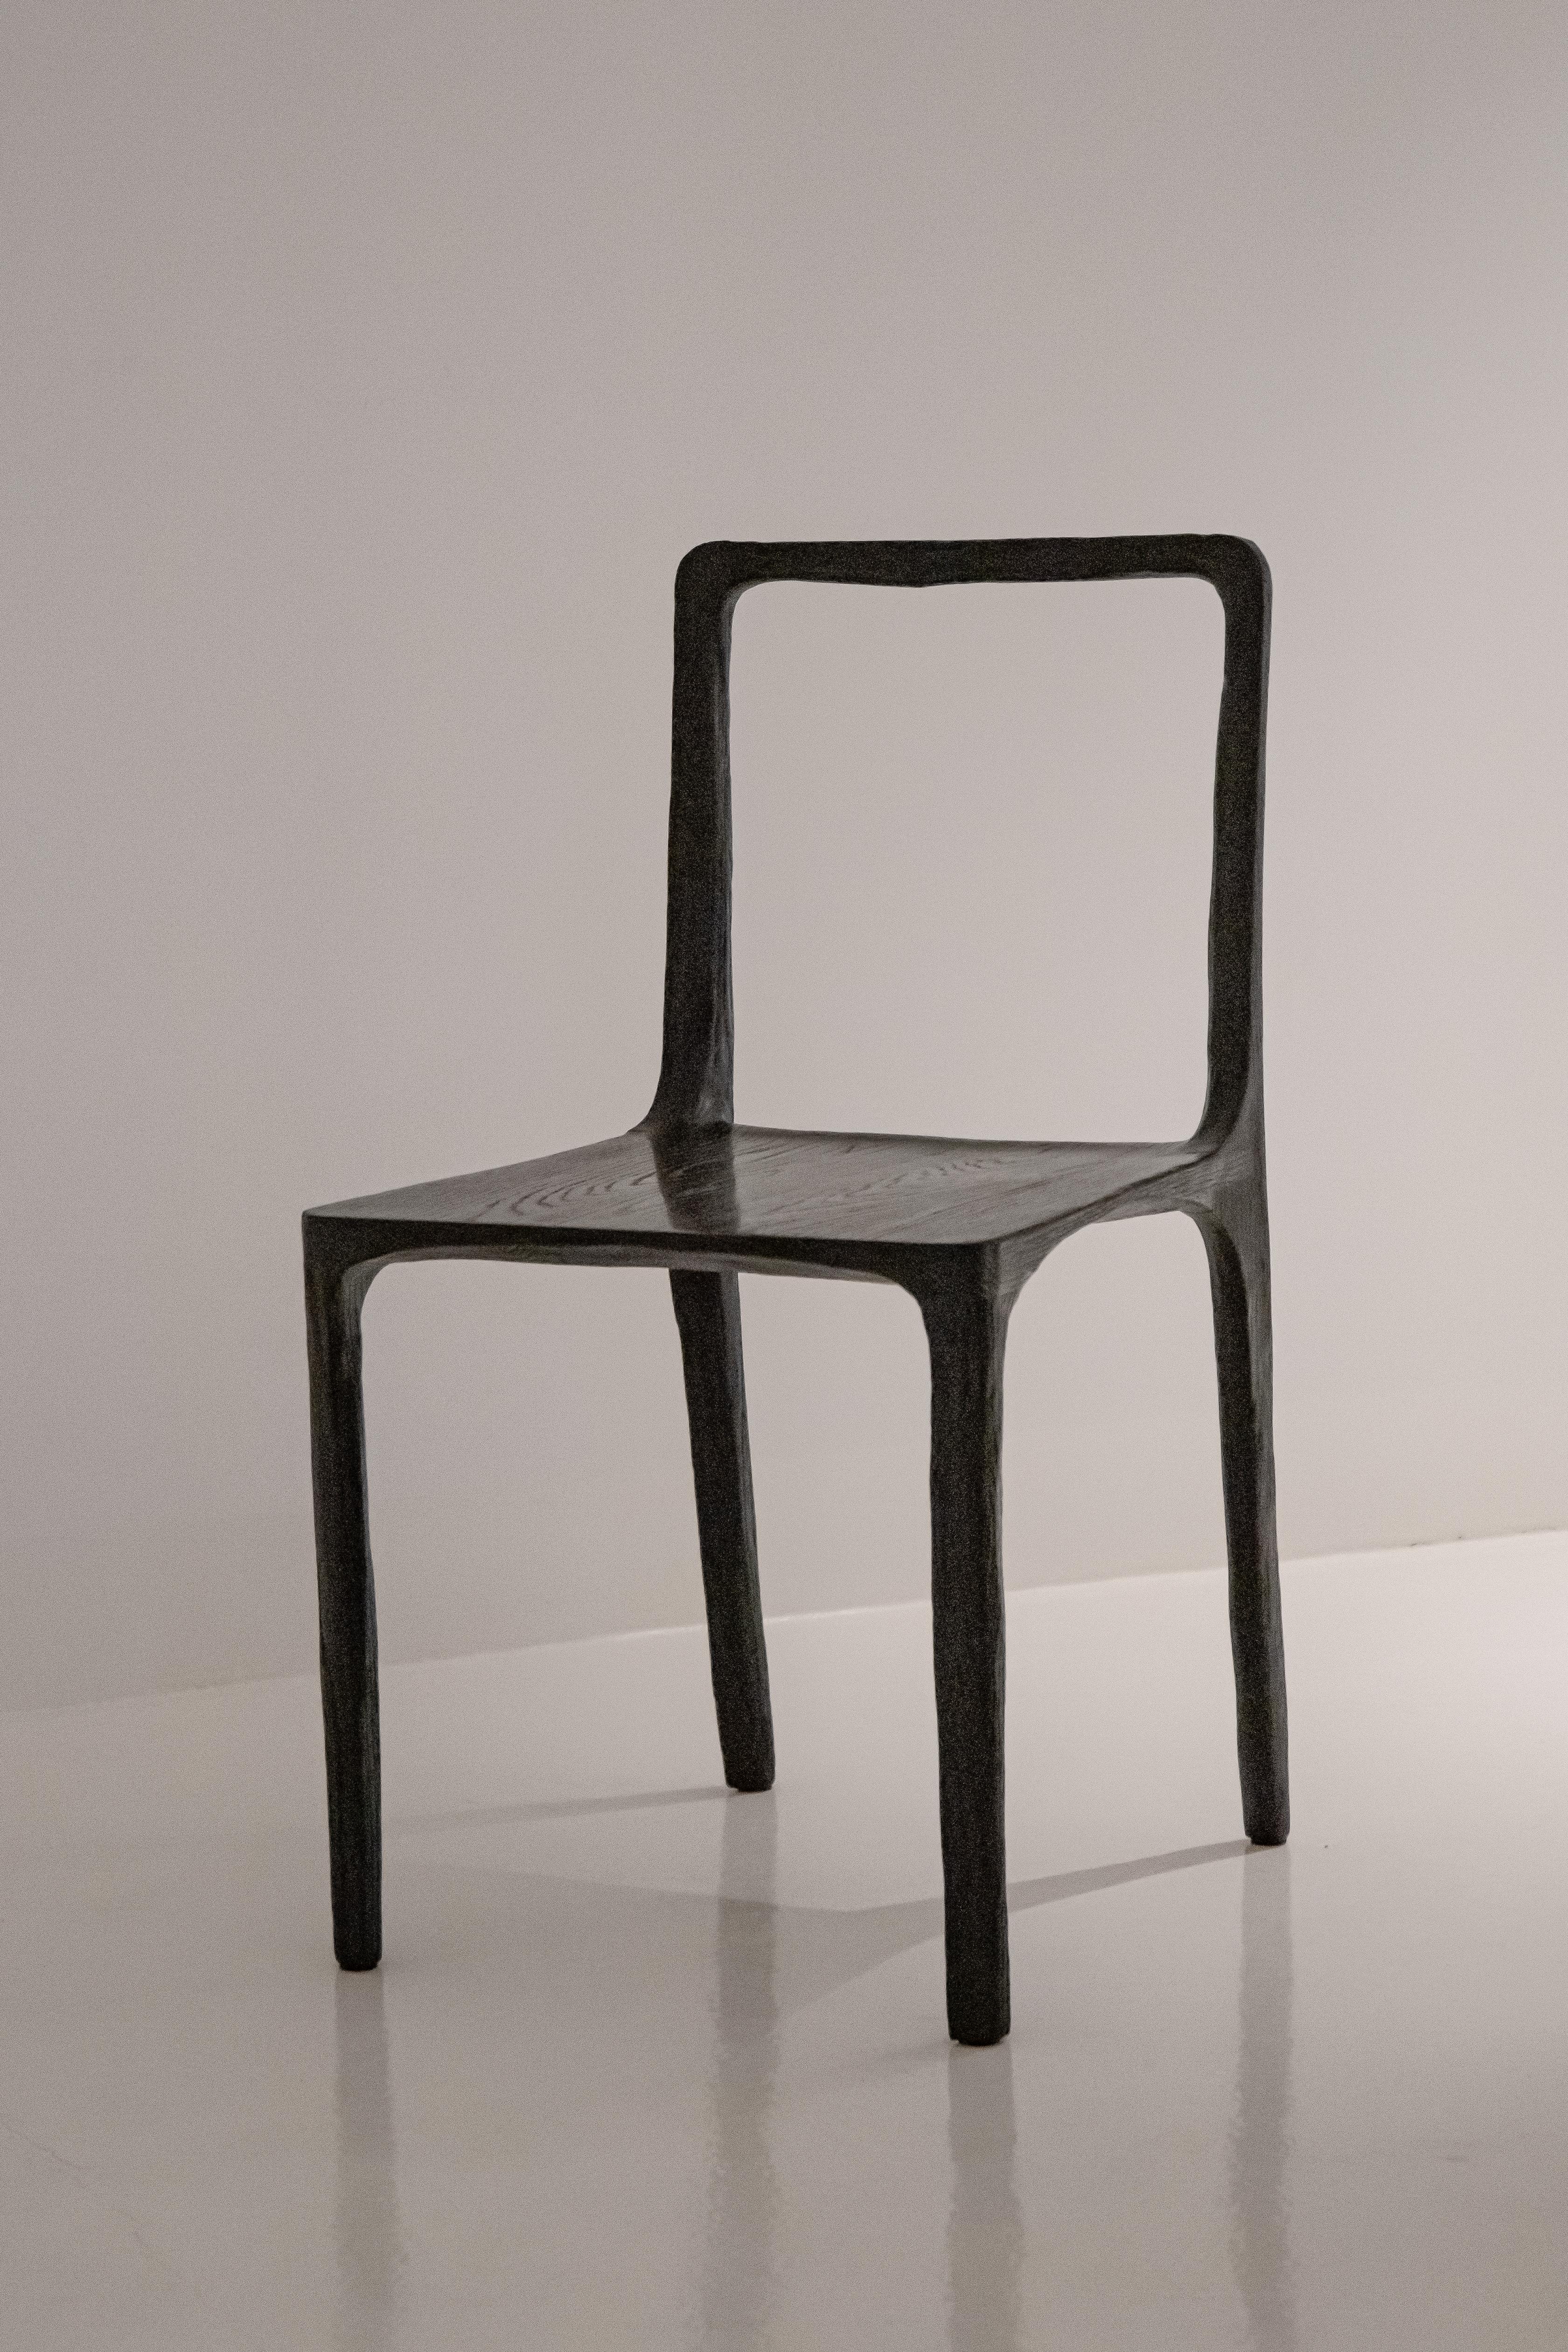 Die Collection'S verwendet den Archetypus des Möbels als Grundlage für die Skulptur, ein Prozess, bei dem die Skulptur an ihren Platz fällt. Von einer geometrischen Baugruppe bis hin zu einem organischen Objekt wird der menschliche Körper als